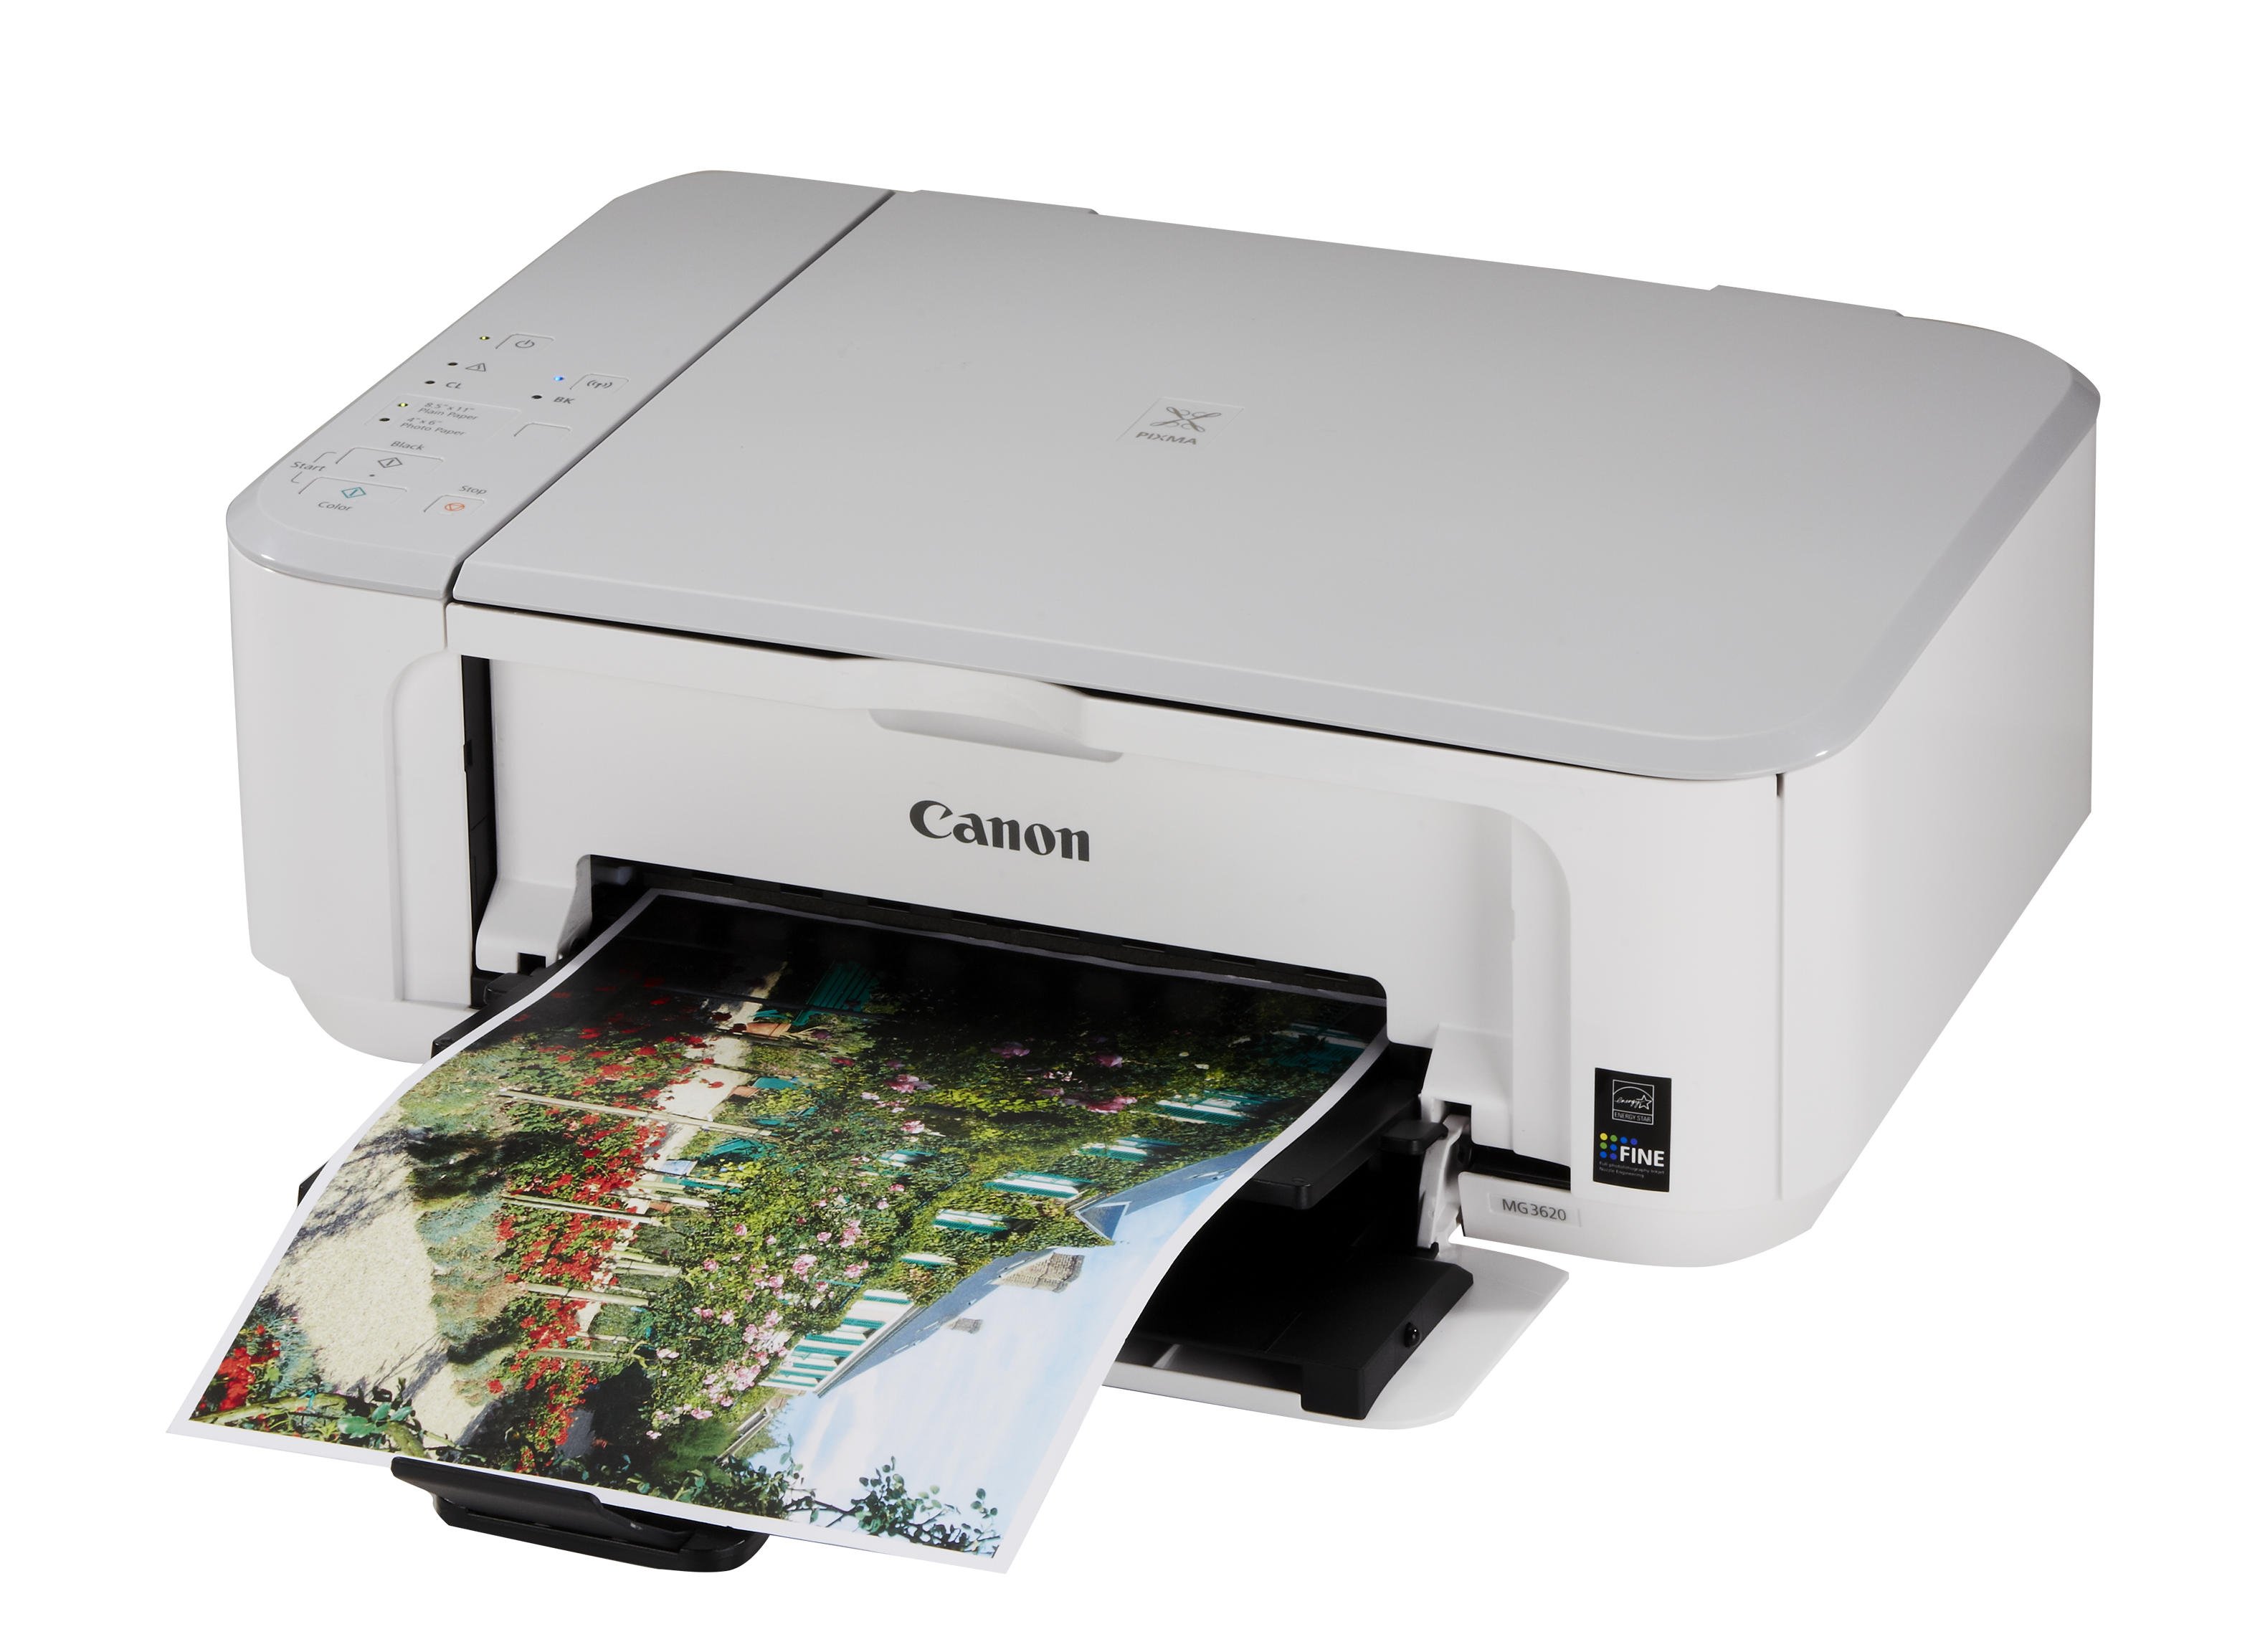 Canon Pixma MG3620 Printer Review - Consumer Reports